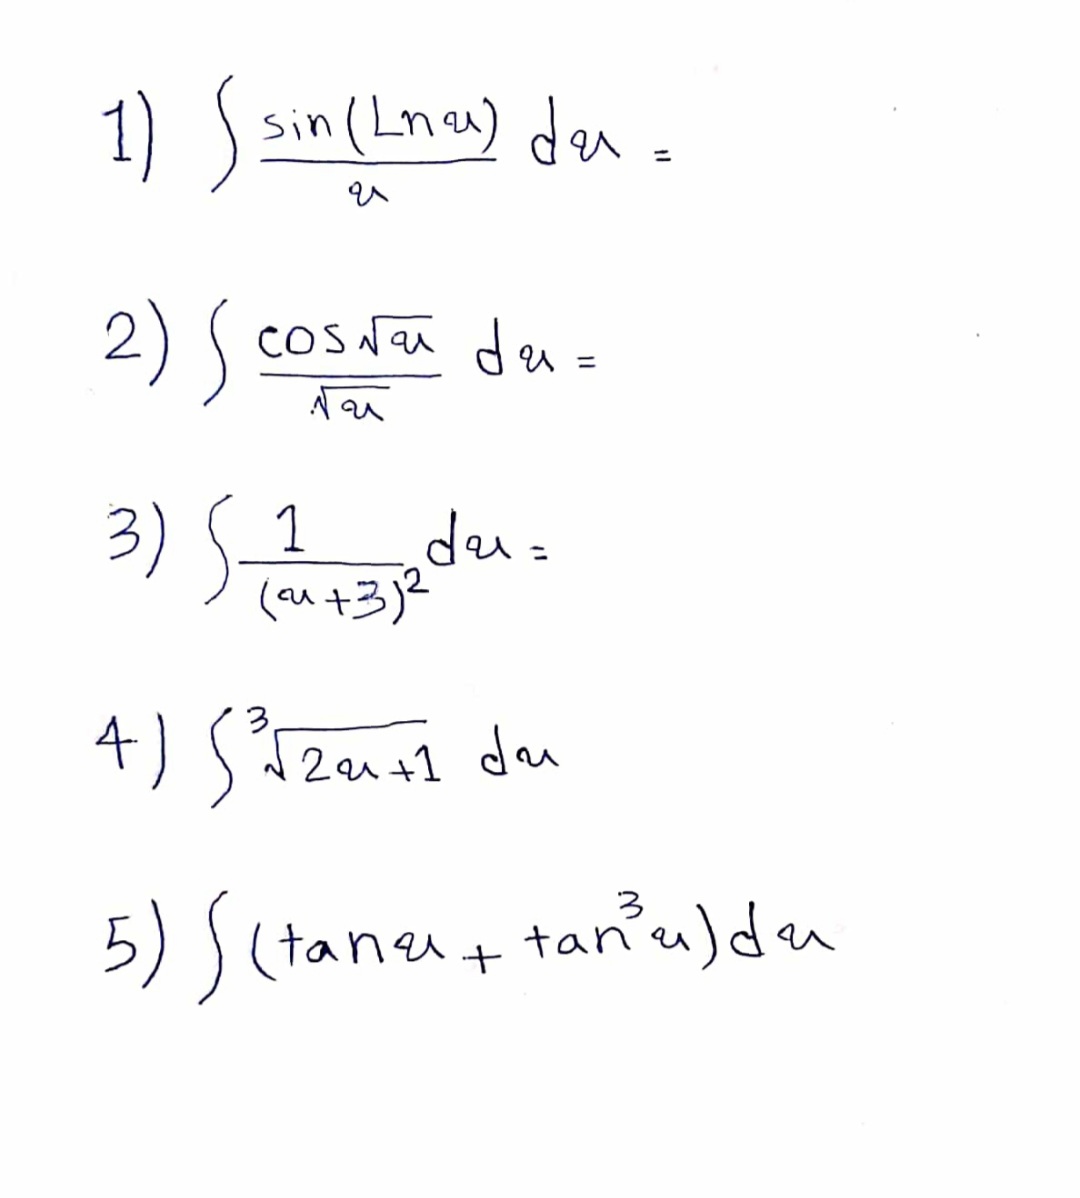 1) sin (Lna) deu=
%3D
2) ( cosNai da=
3) Sa.
deu=
(au +3)2
4) Szal da
2a1 +1 du
5) ) (tane+ tan'u)deu
tancu)du
